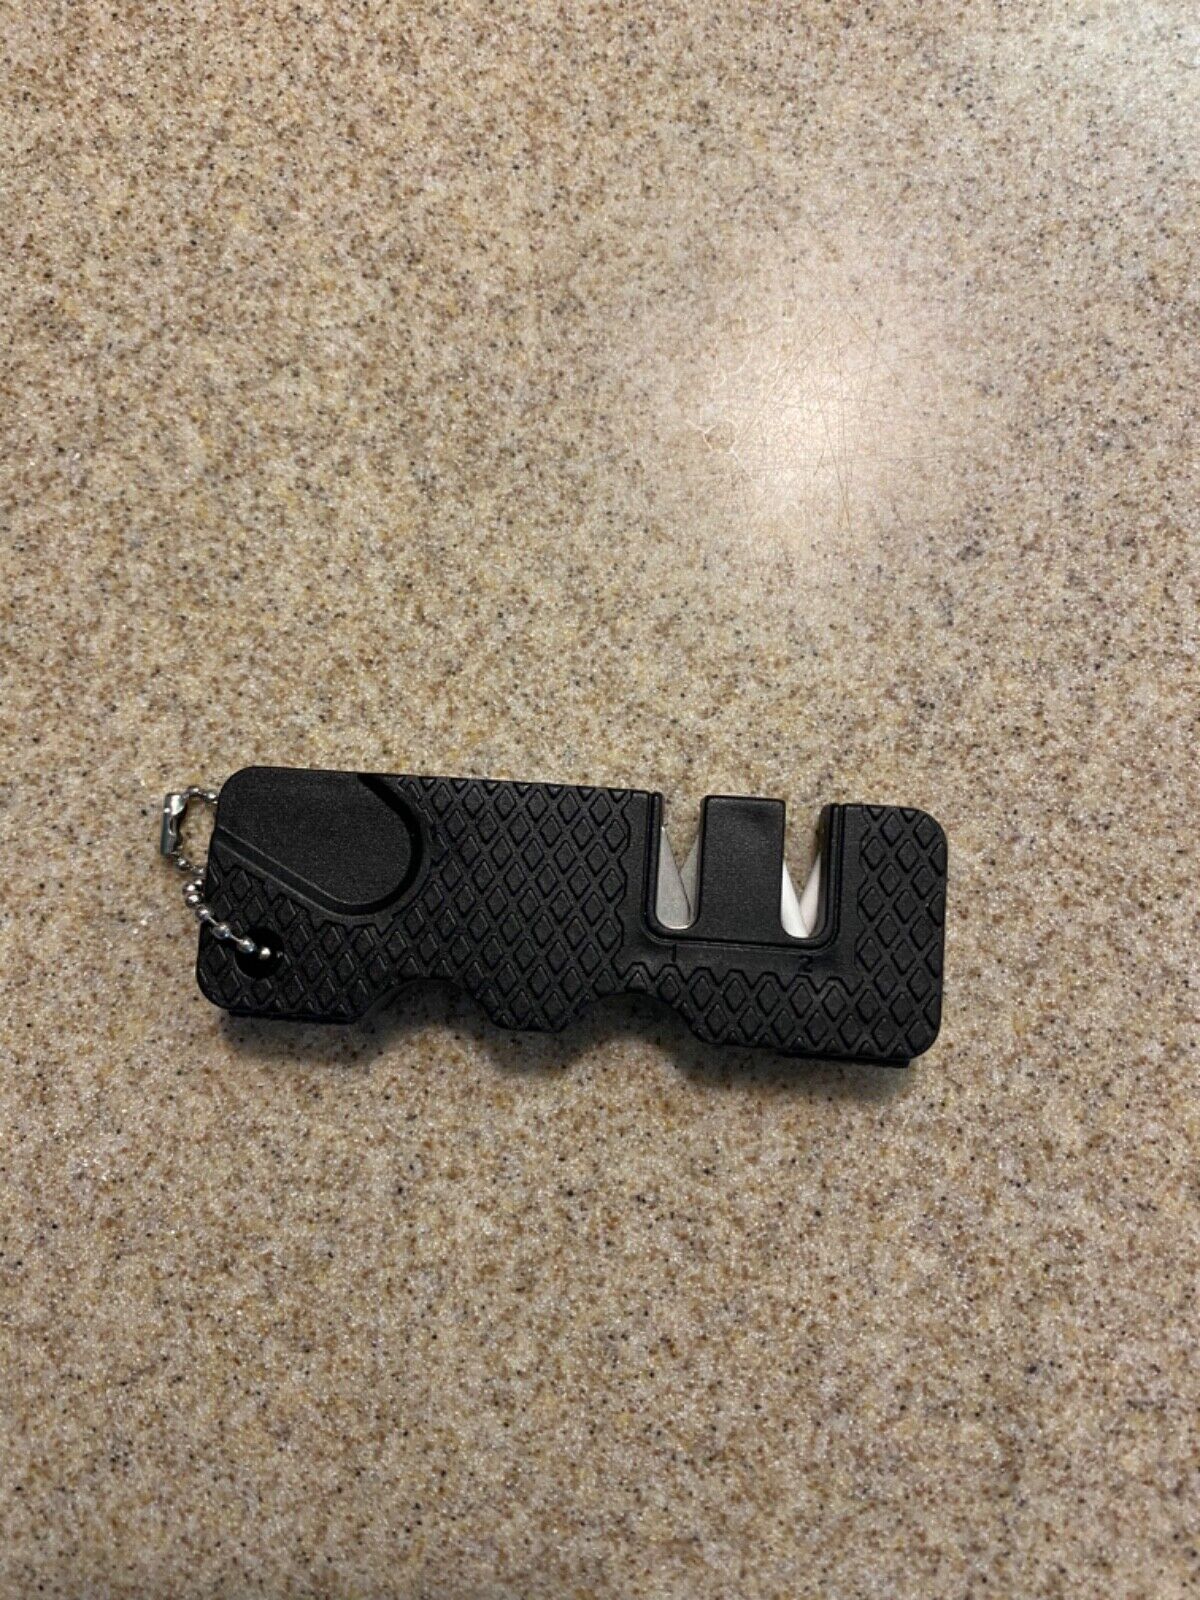 Pocket Knife Sharpener with keychain - Black